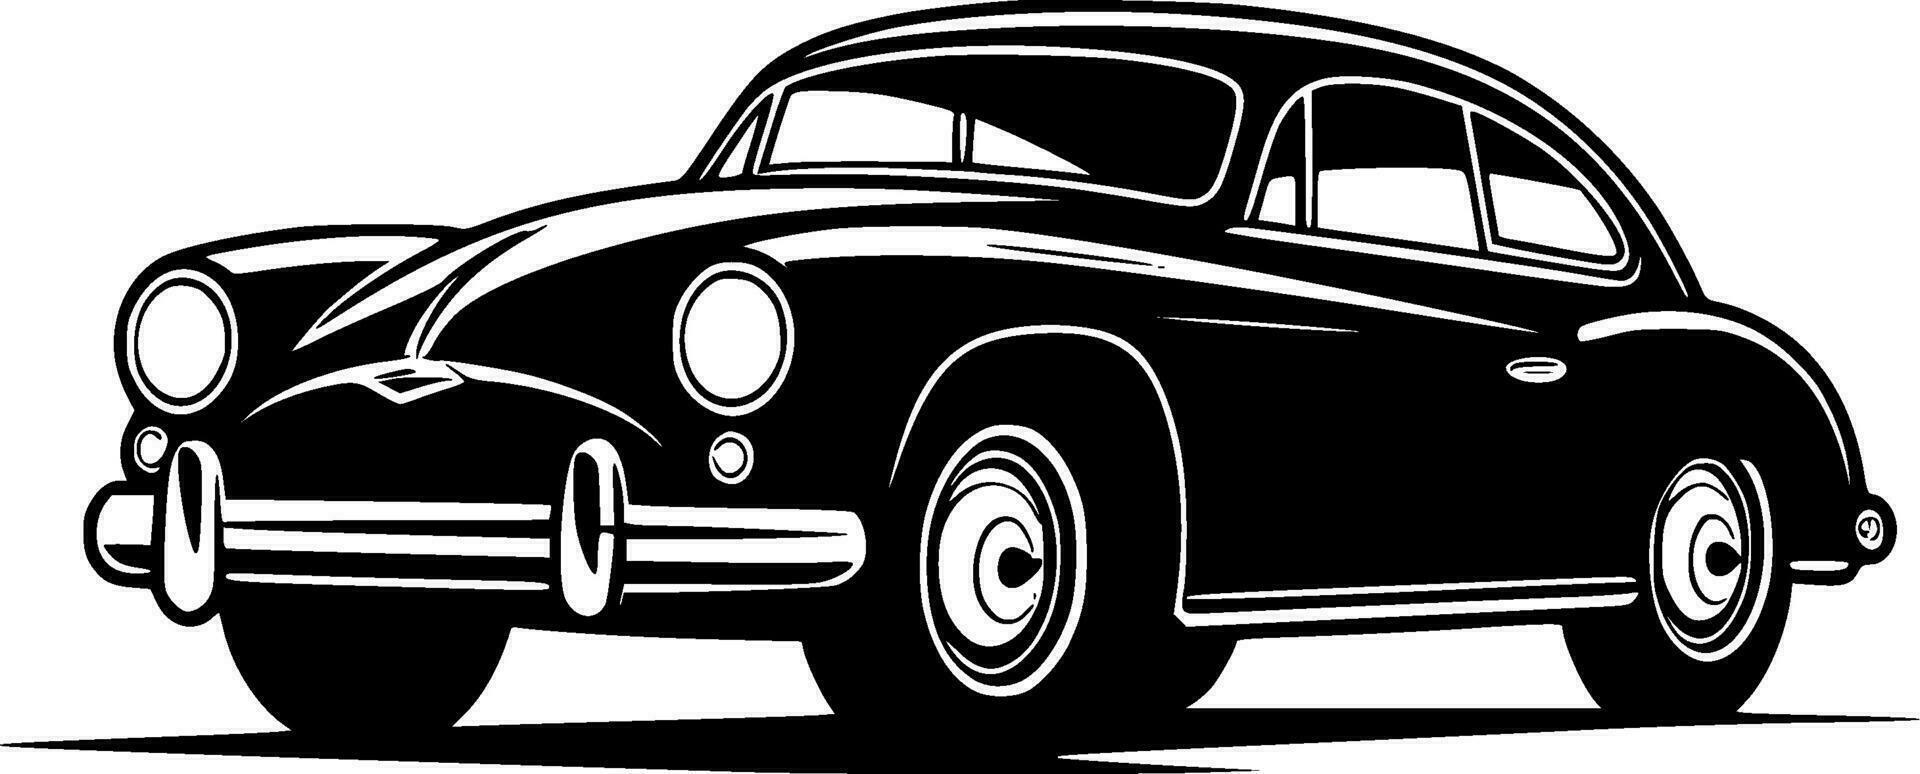 bil, svart och vit vektor illustration